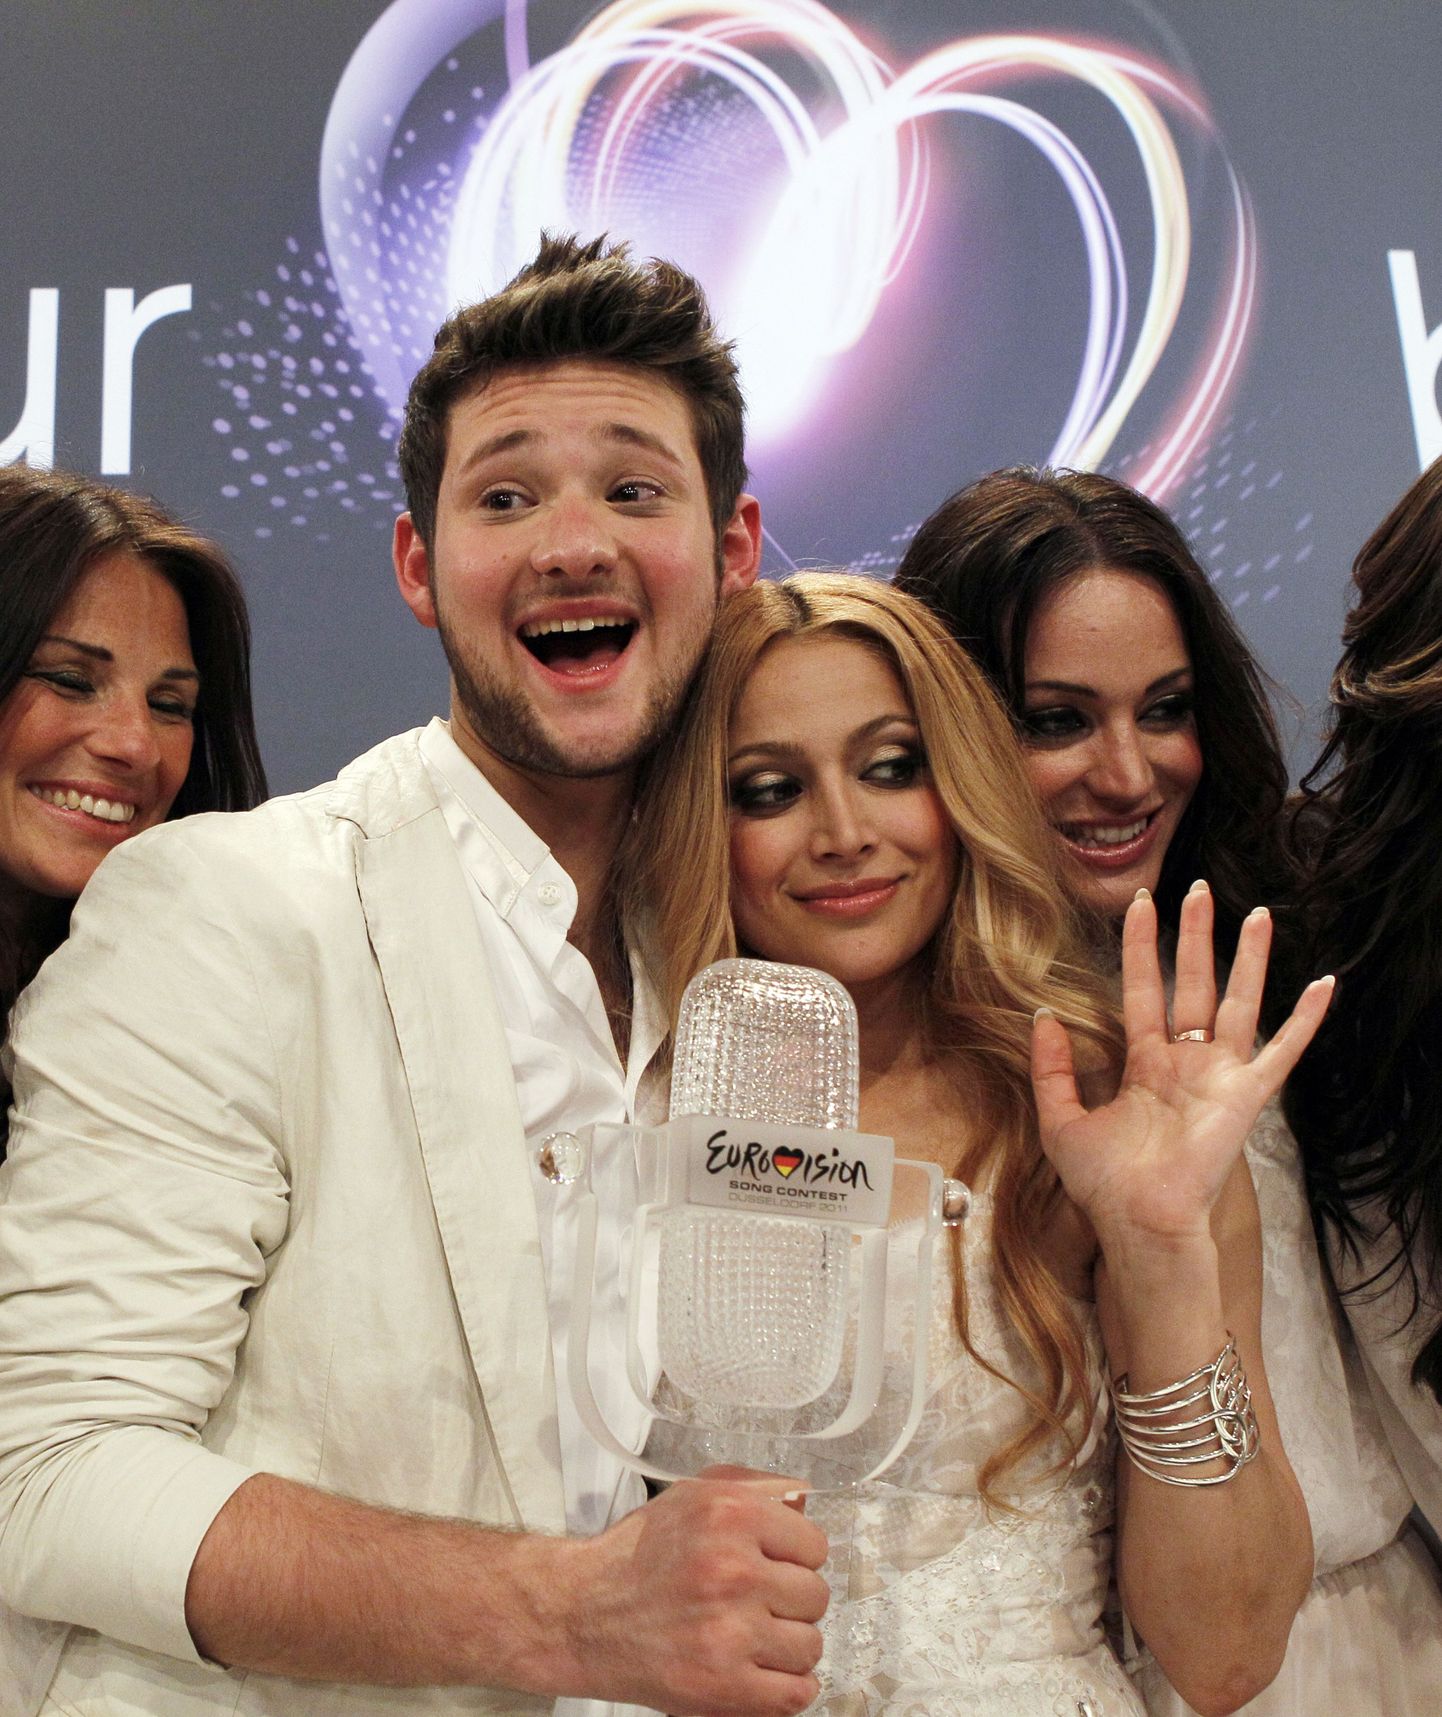 Победители песенного конкурса "Евровидение-2011" айзербайджанский дуэт Ell и Nikki